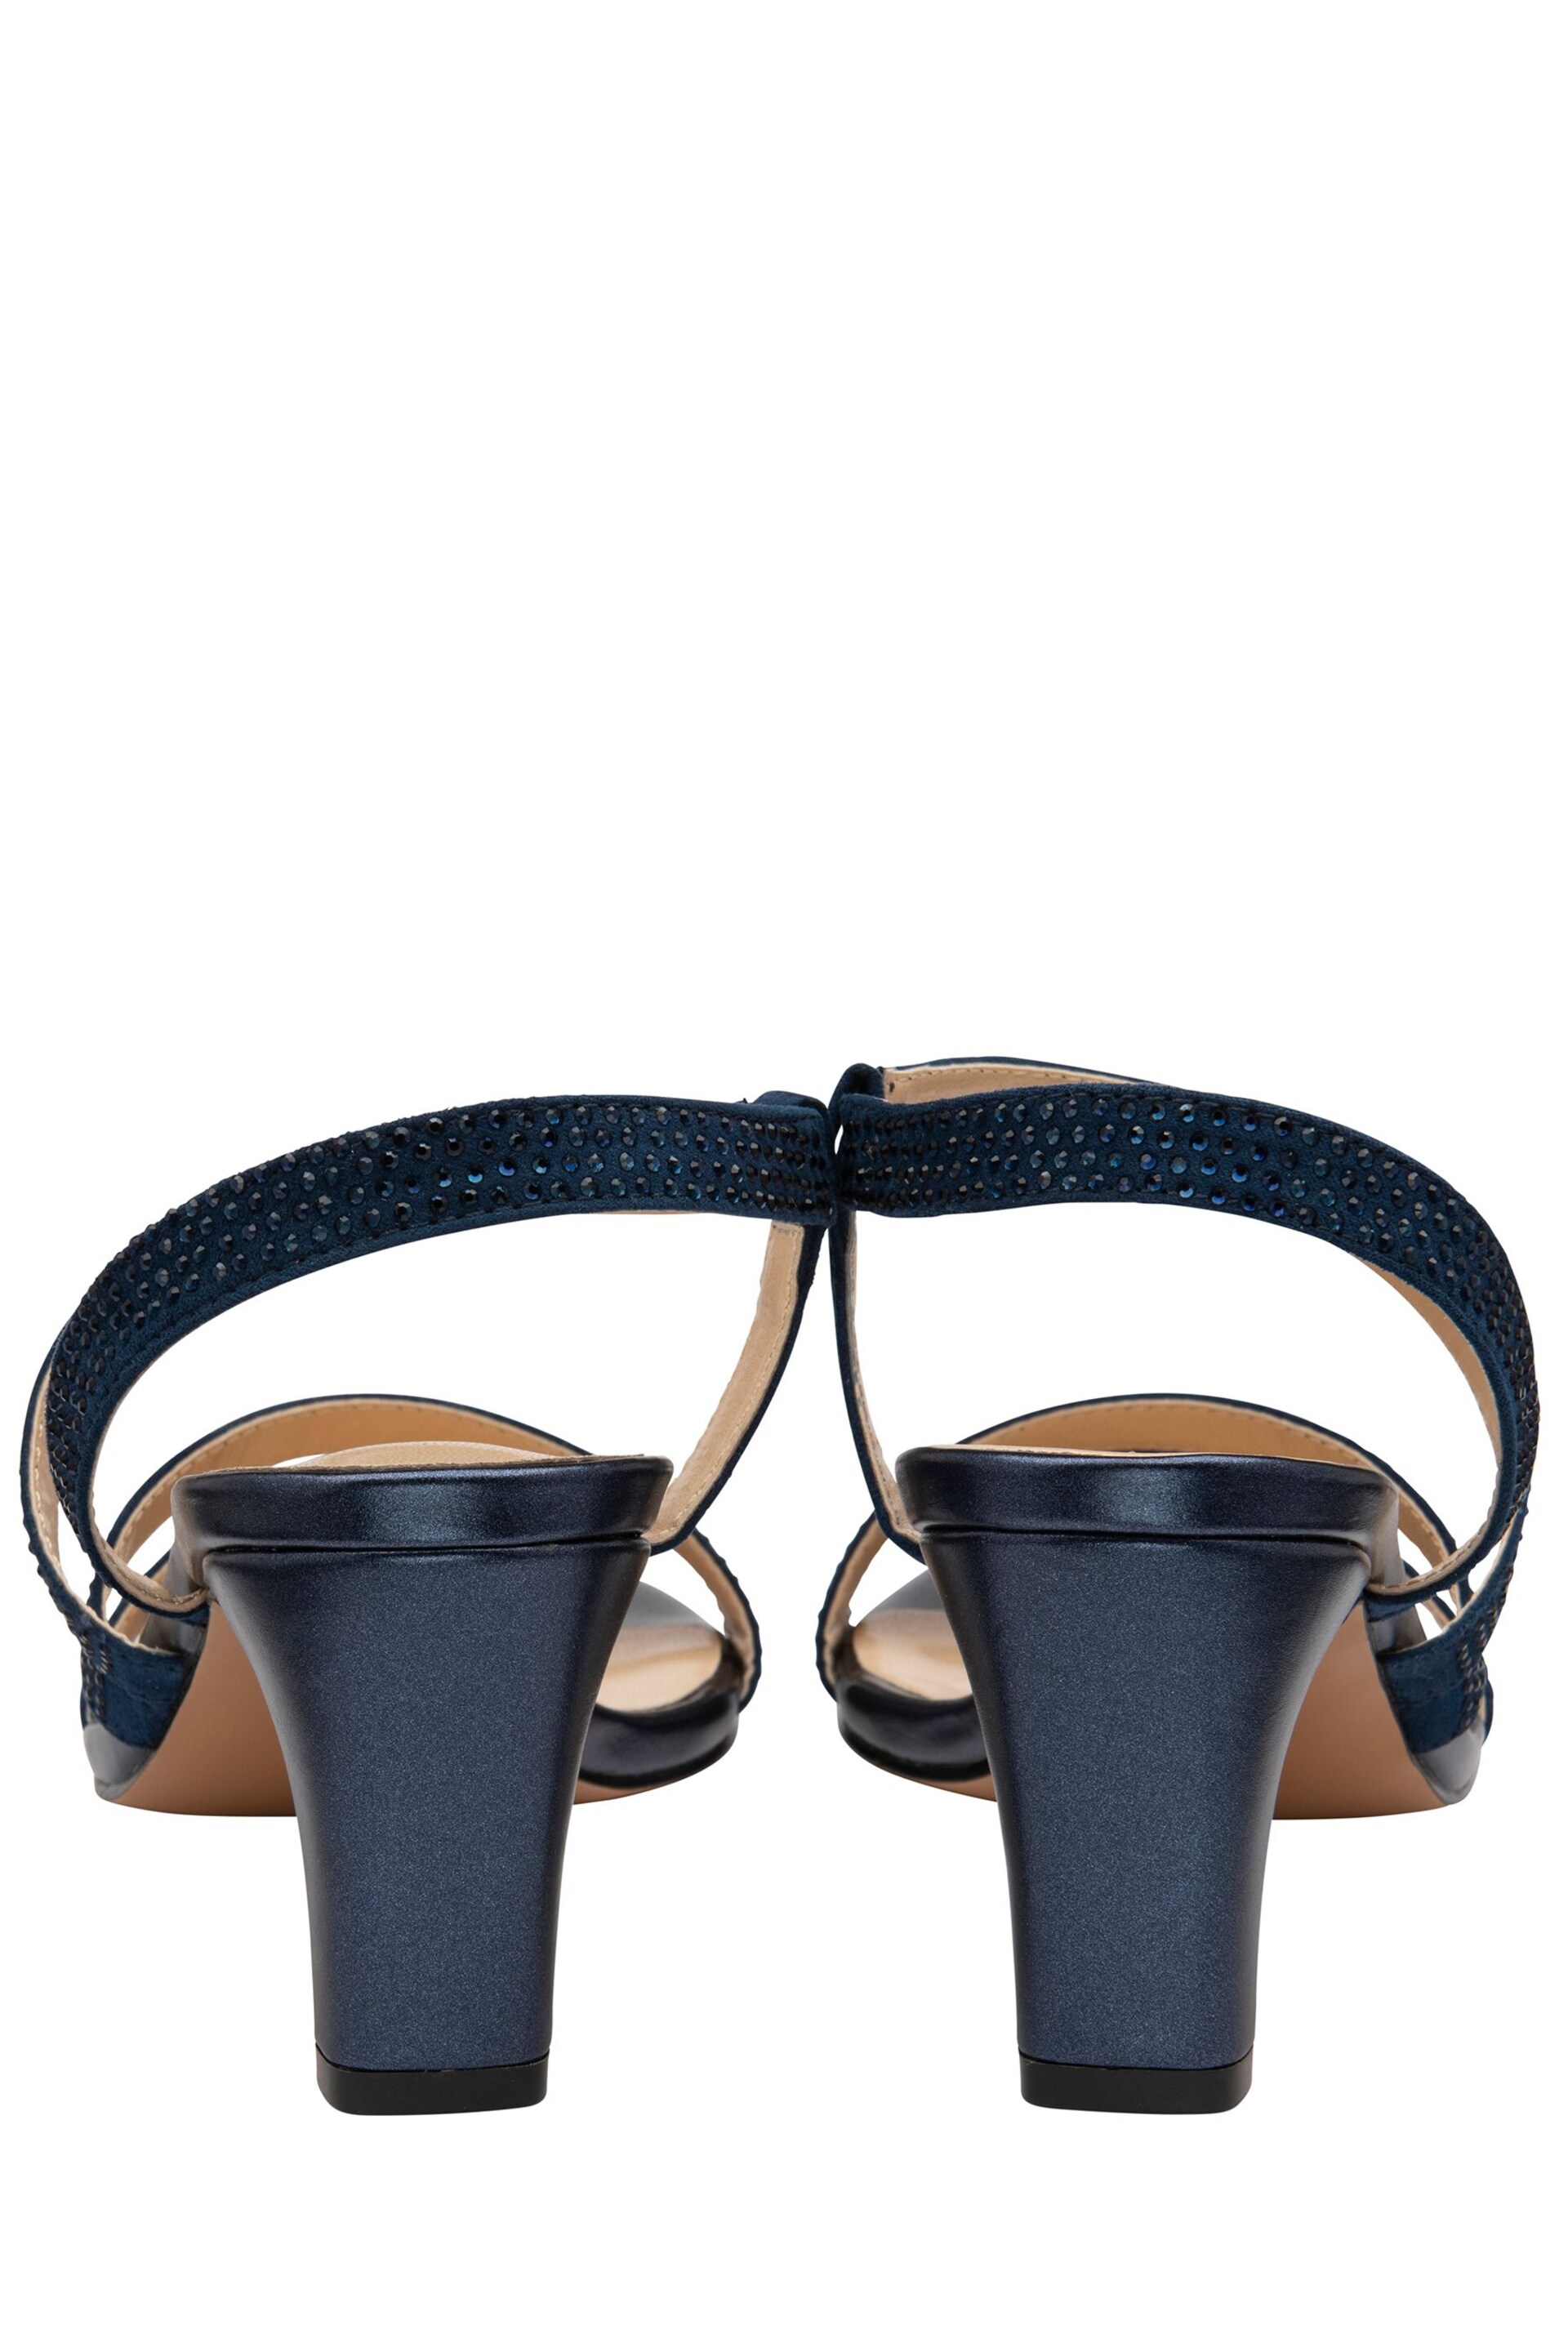 Lotus Blue Diamante Ocassion Sandals - Image 3 of 4